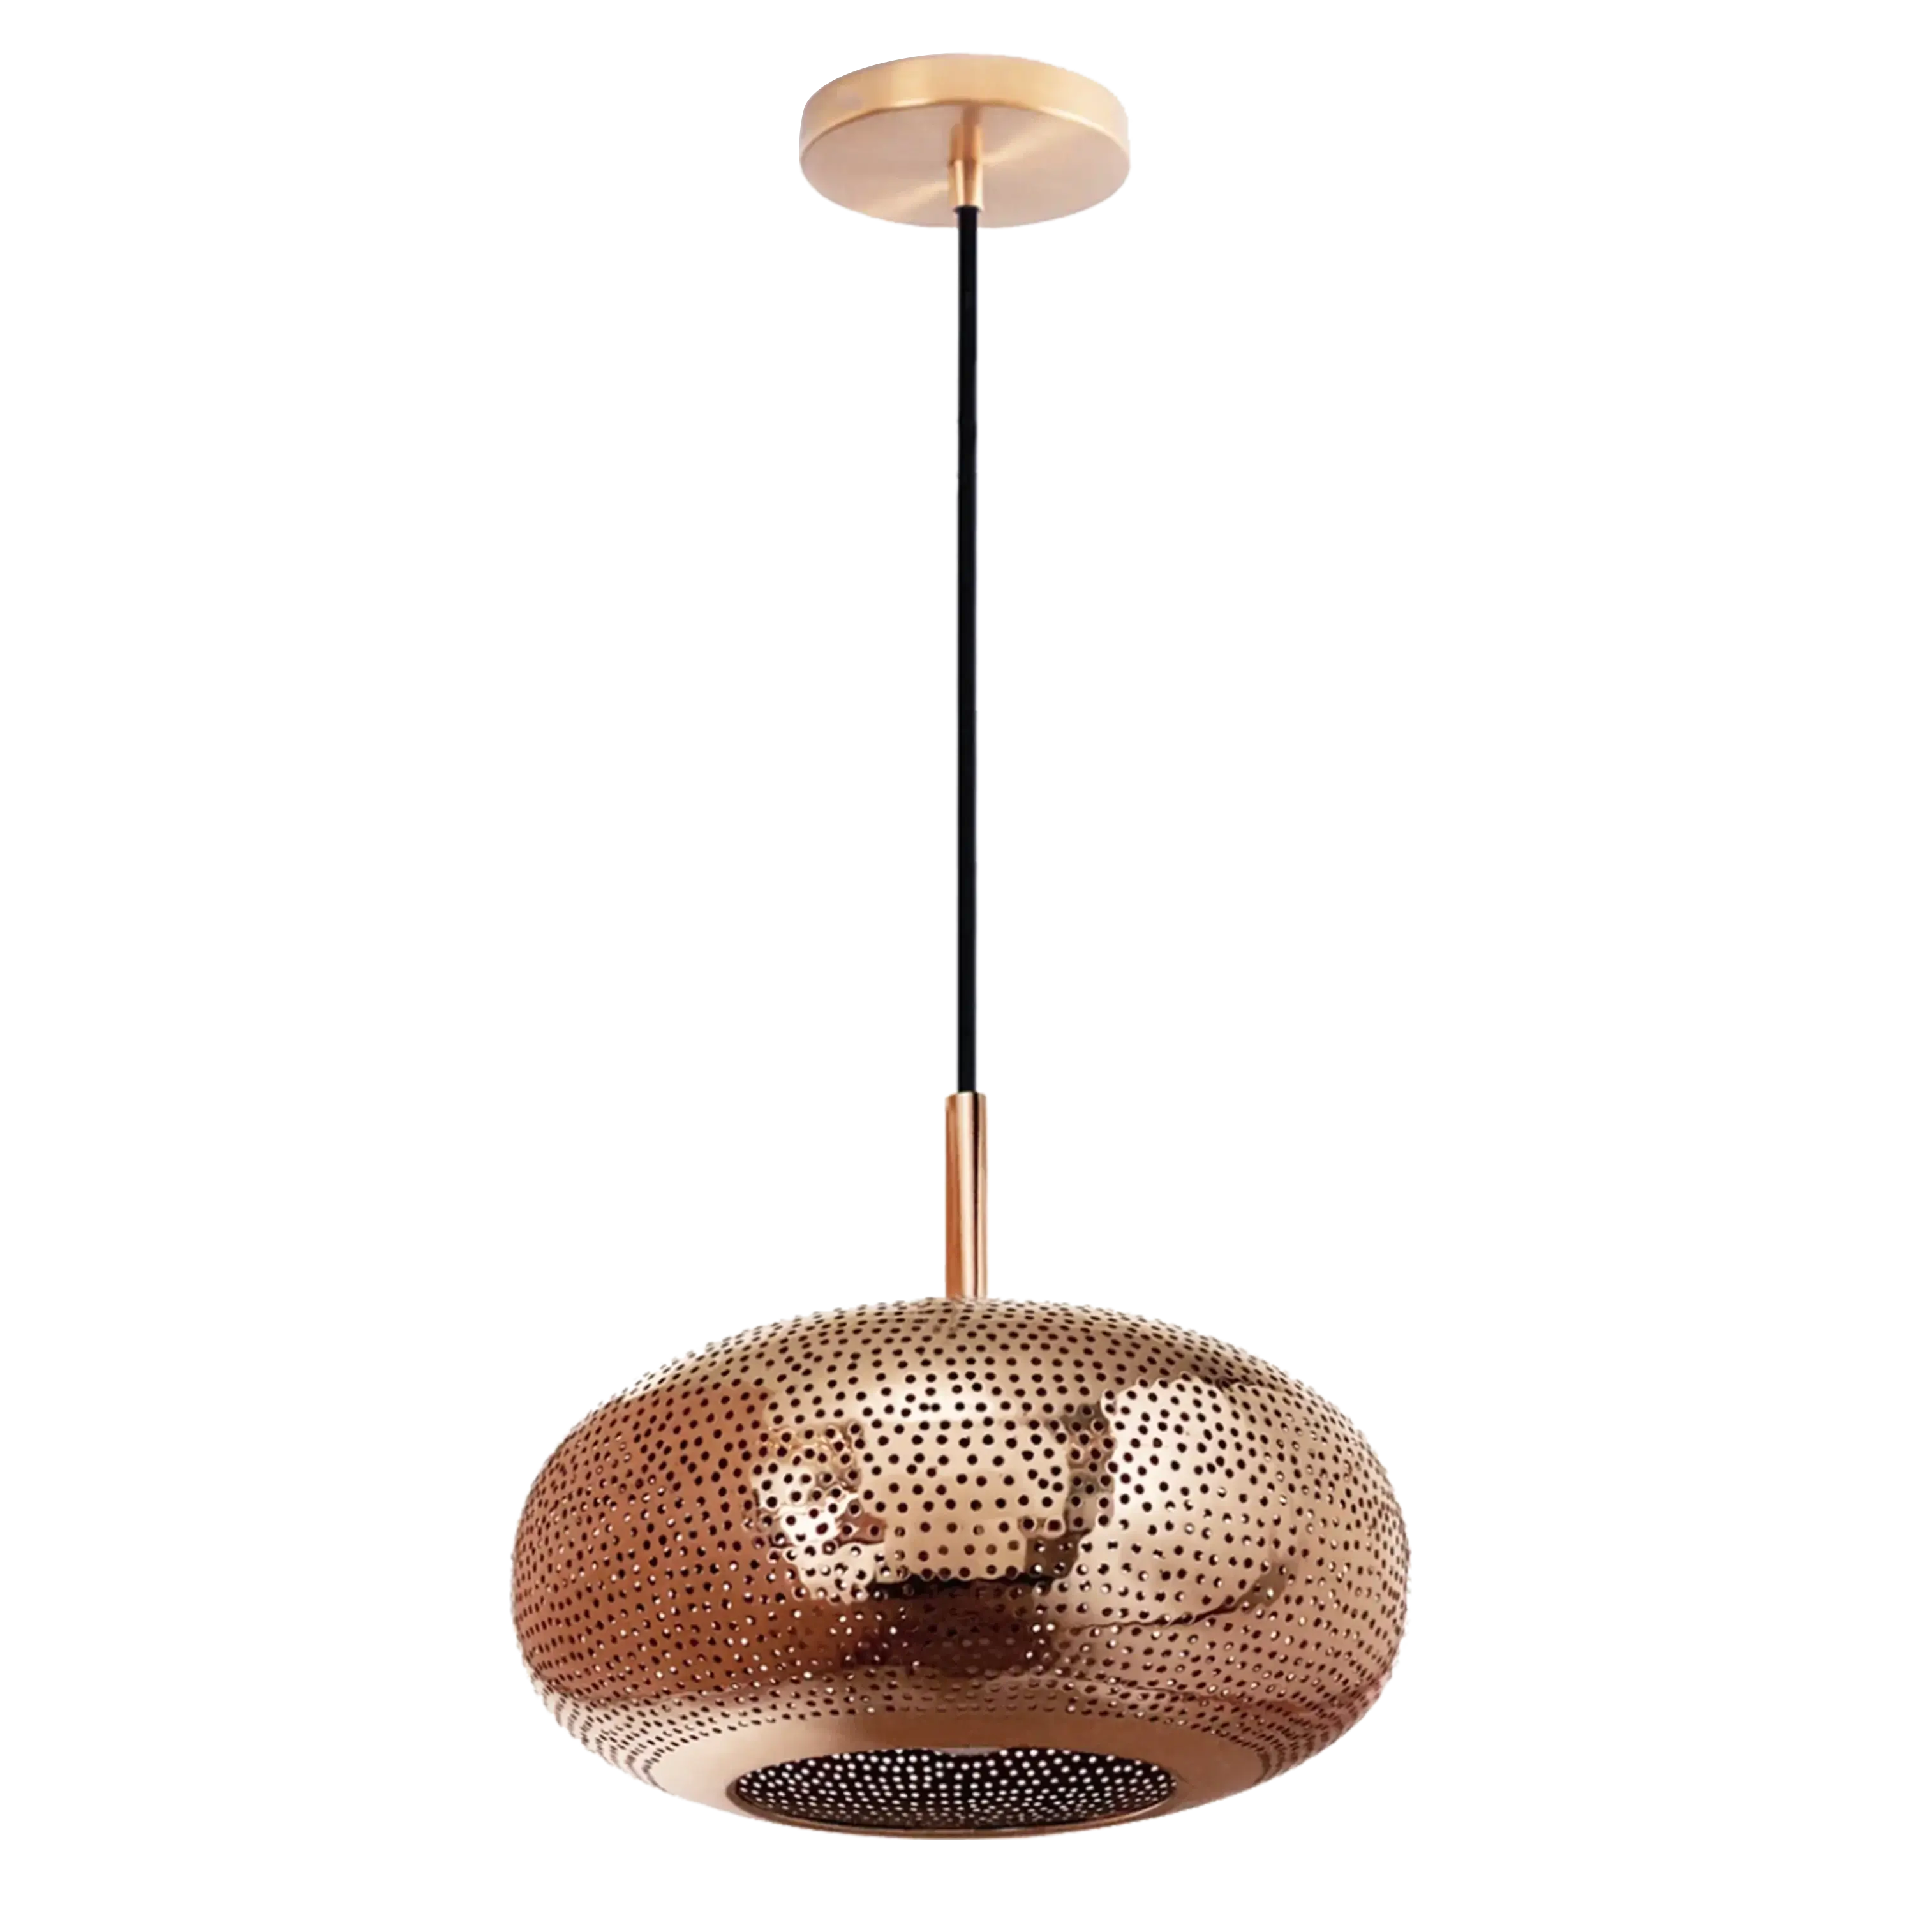 Dounia home Pendant light in Polished copper made of semi precious meta, Model: lila